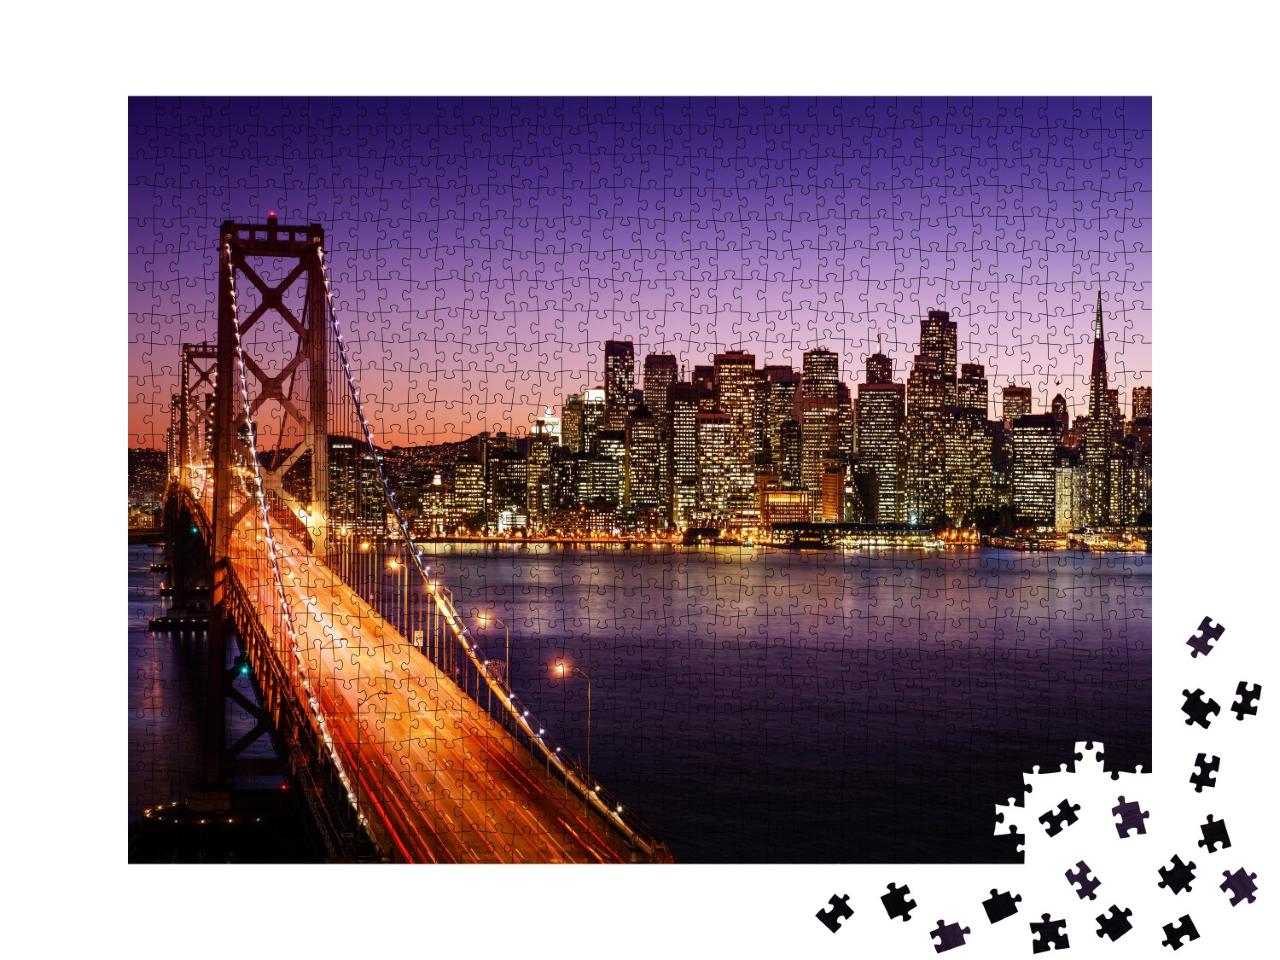 Puzzle de 1000 pièces « Californie : San Francisco et Bay Bridge de nuit »